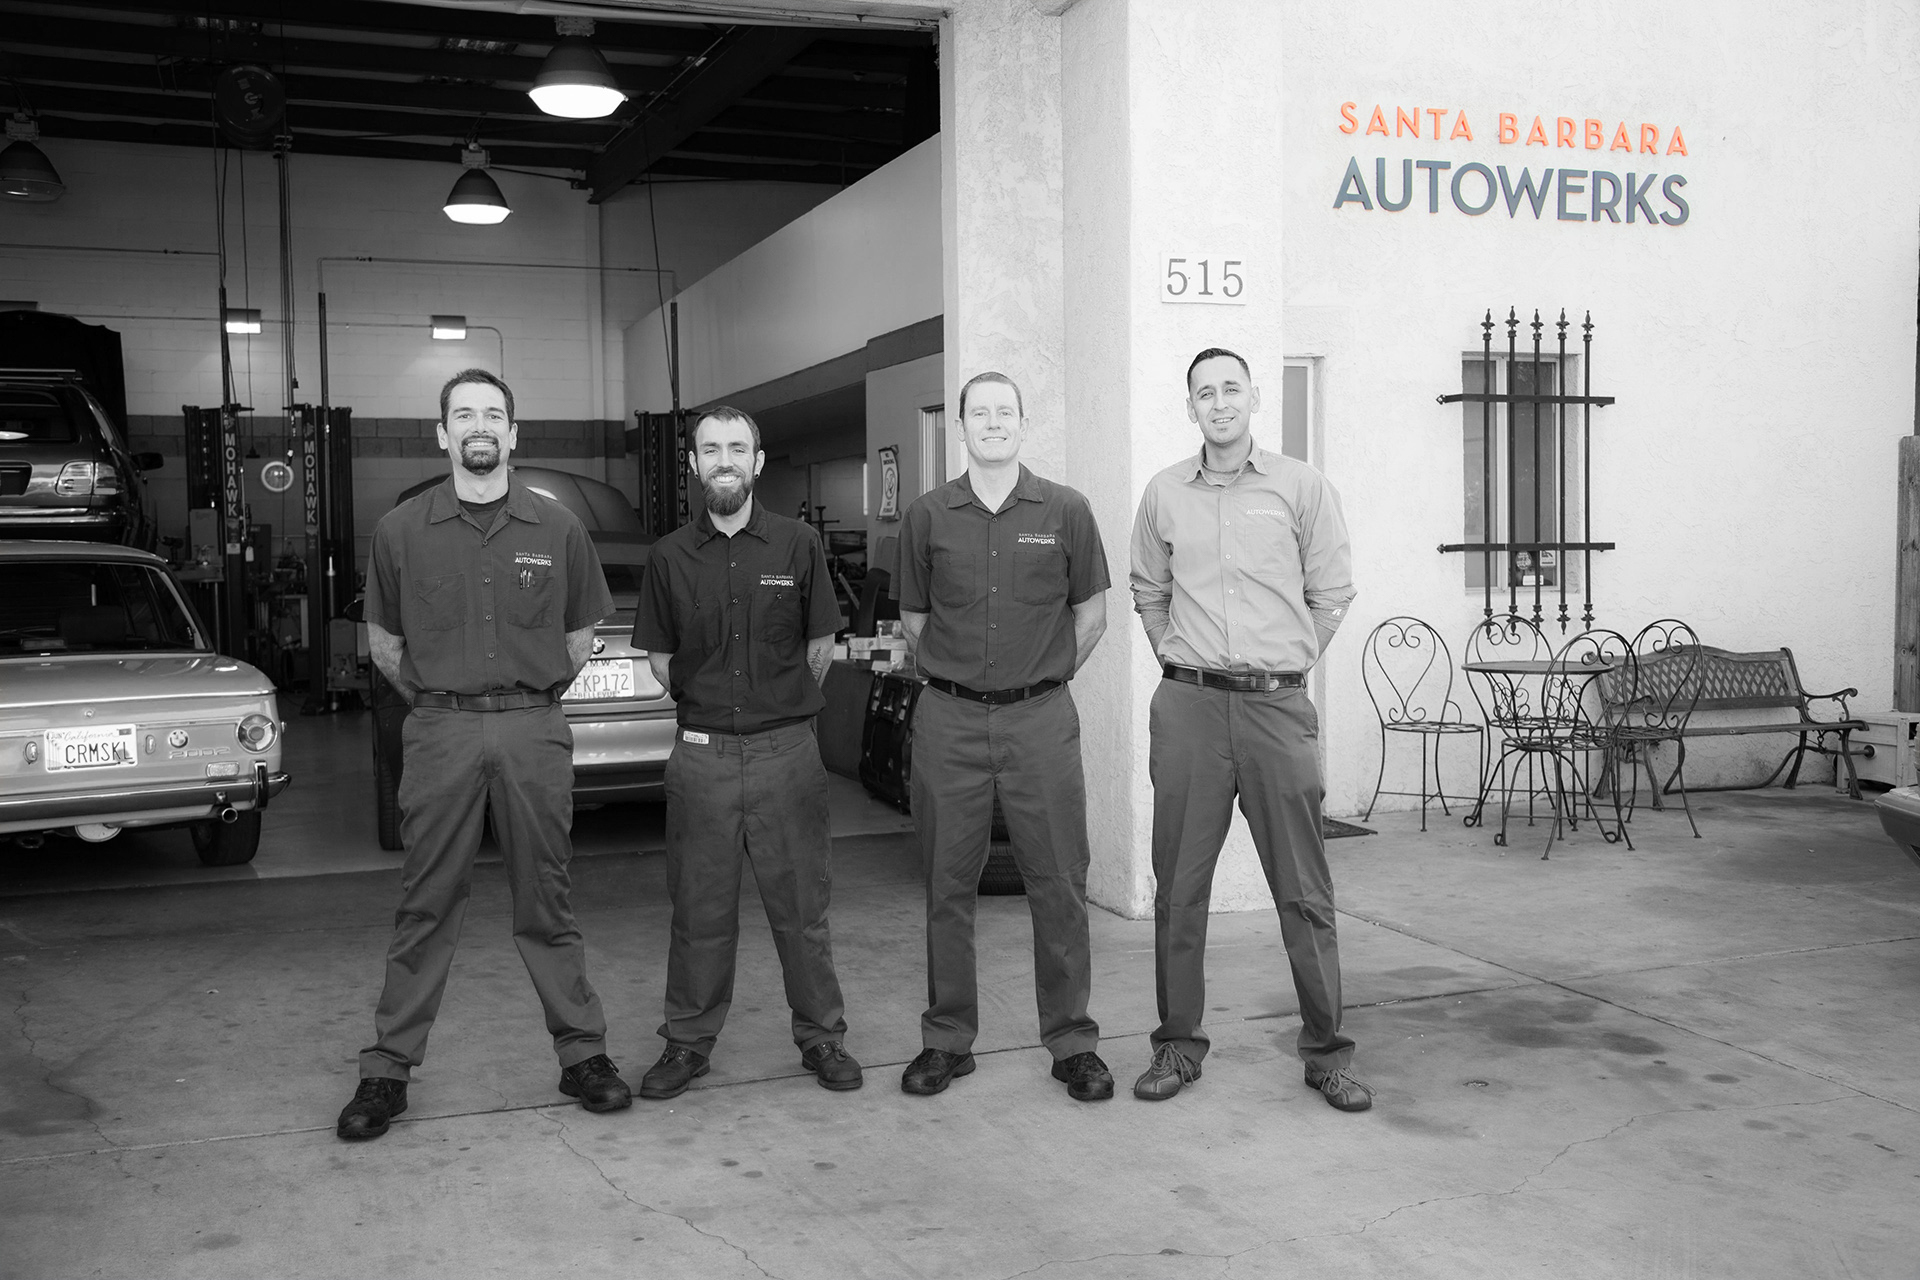 Santa Barbara Autowerks Professional Team